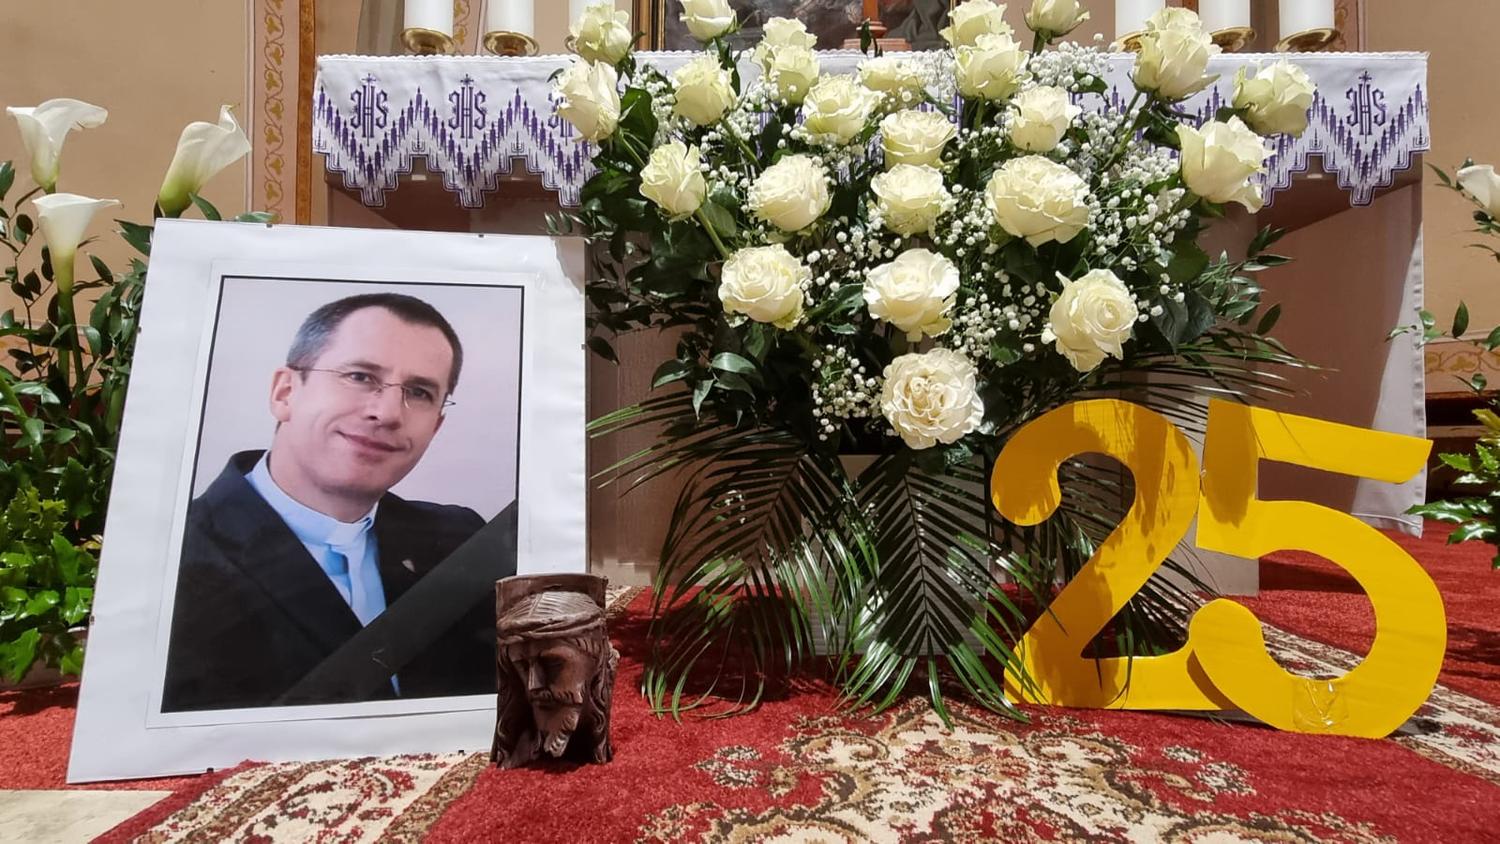 V deň pohrebu otca Jozefa Žvandu: S vrcholom eucharistickej obety prišiel aj vrchol obety jeho života